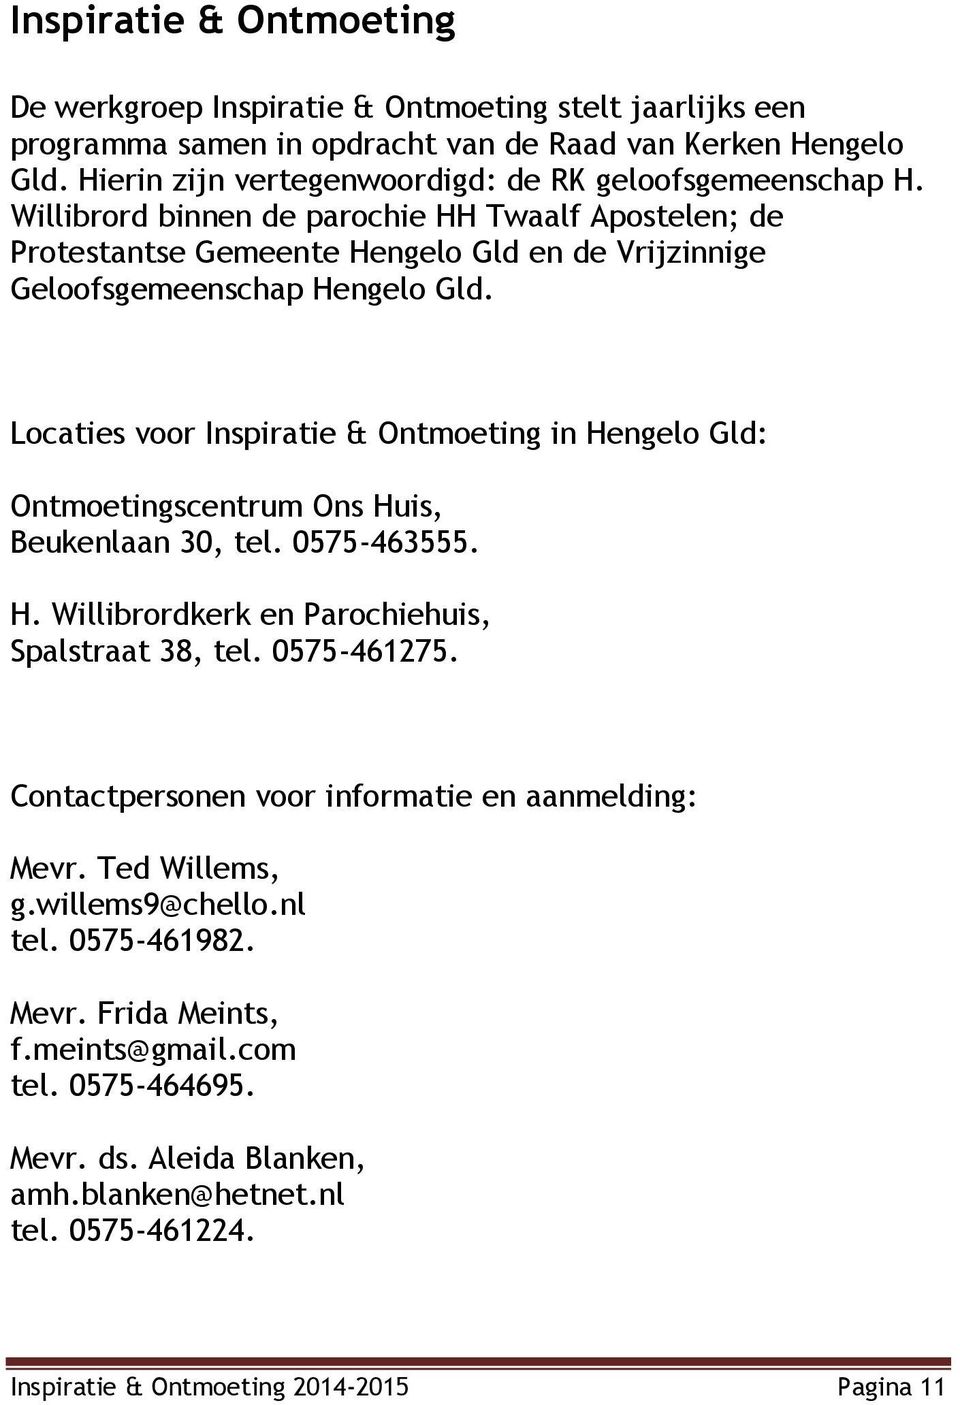 Locaties voor Inspiratie & Ontmoeting in Hengelo Gld: Ontmoetingscentrum Ons Huis, Beukenlaan 30, tel. 0575-463555. H. Willibrordkerk en Parochiehuis, Spalstraat 38, tel. 0575-461275.